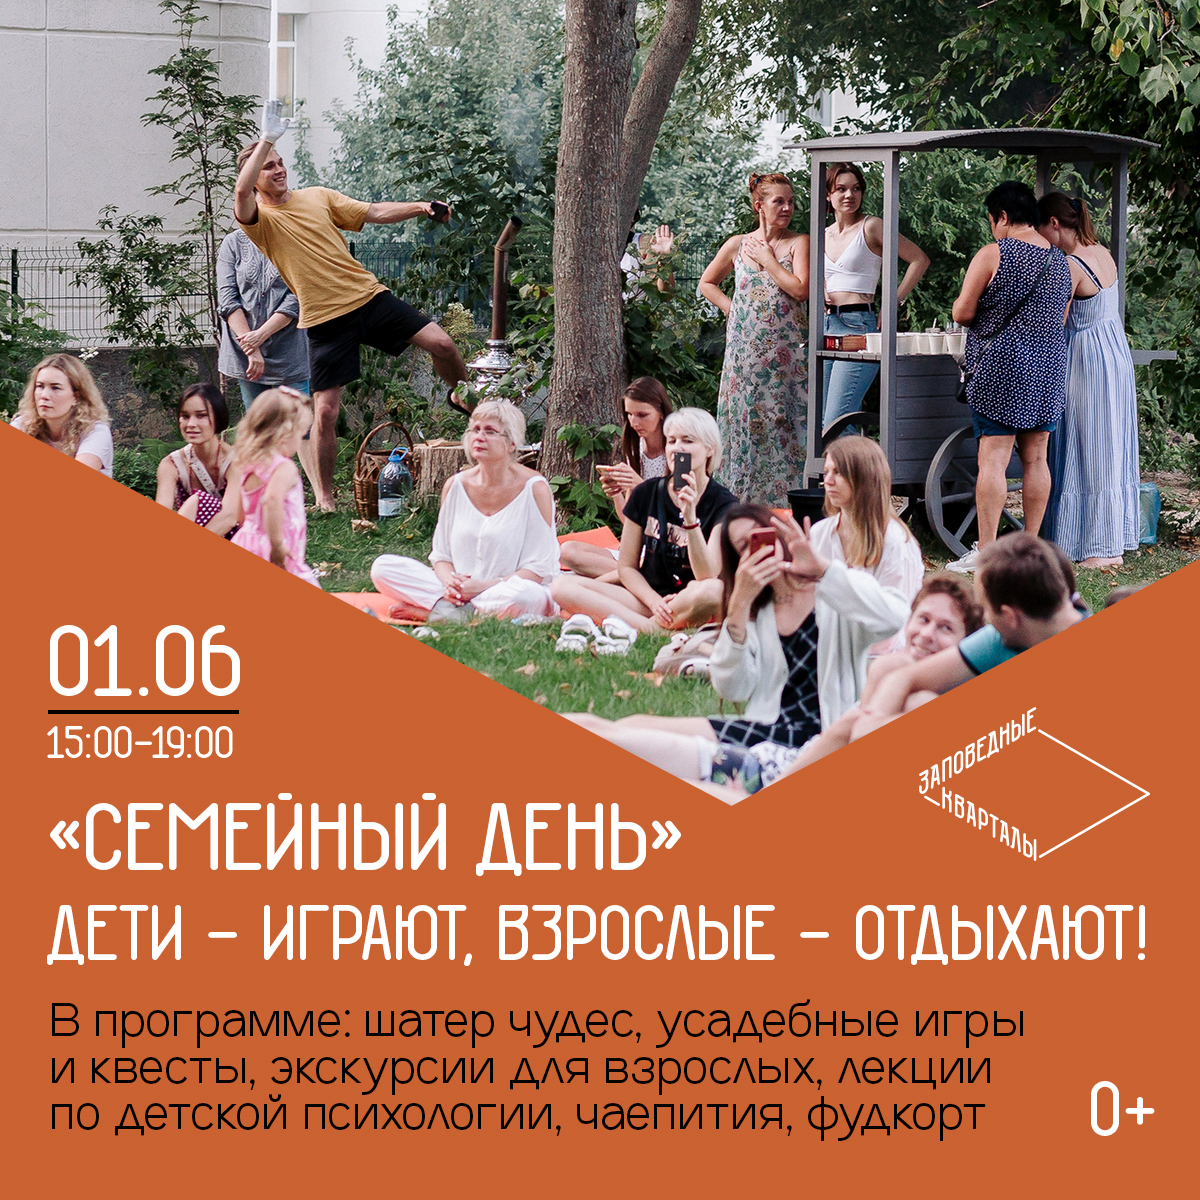 День защиты детей впервые пройдет в «Заповедных кварталах» в Нижнем Новгороде